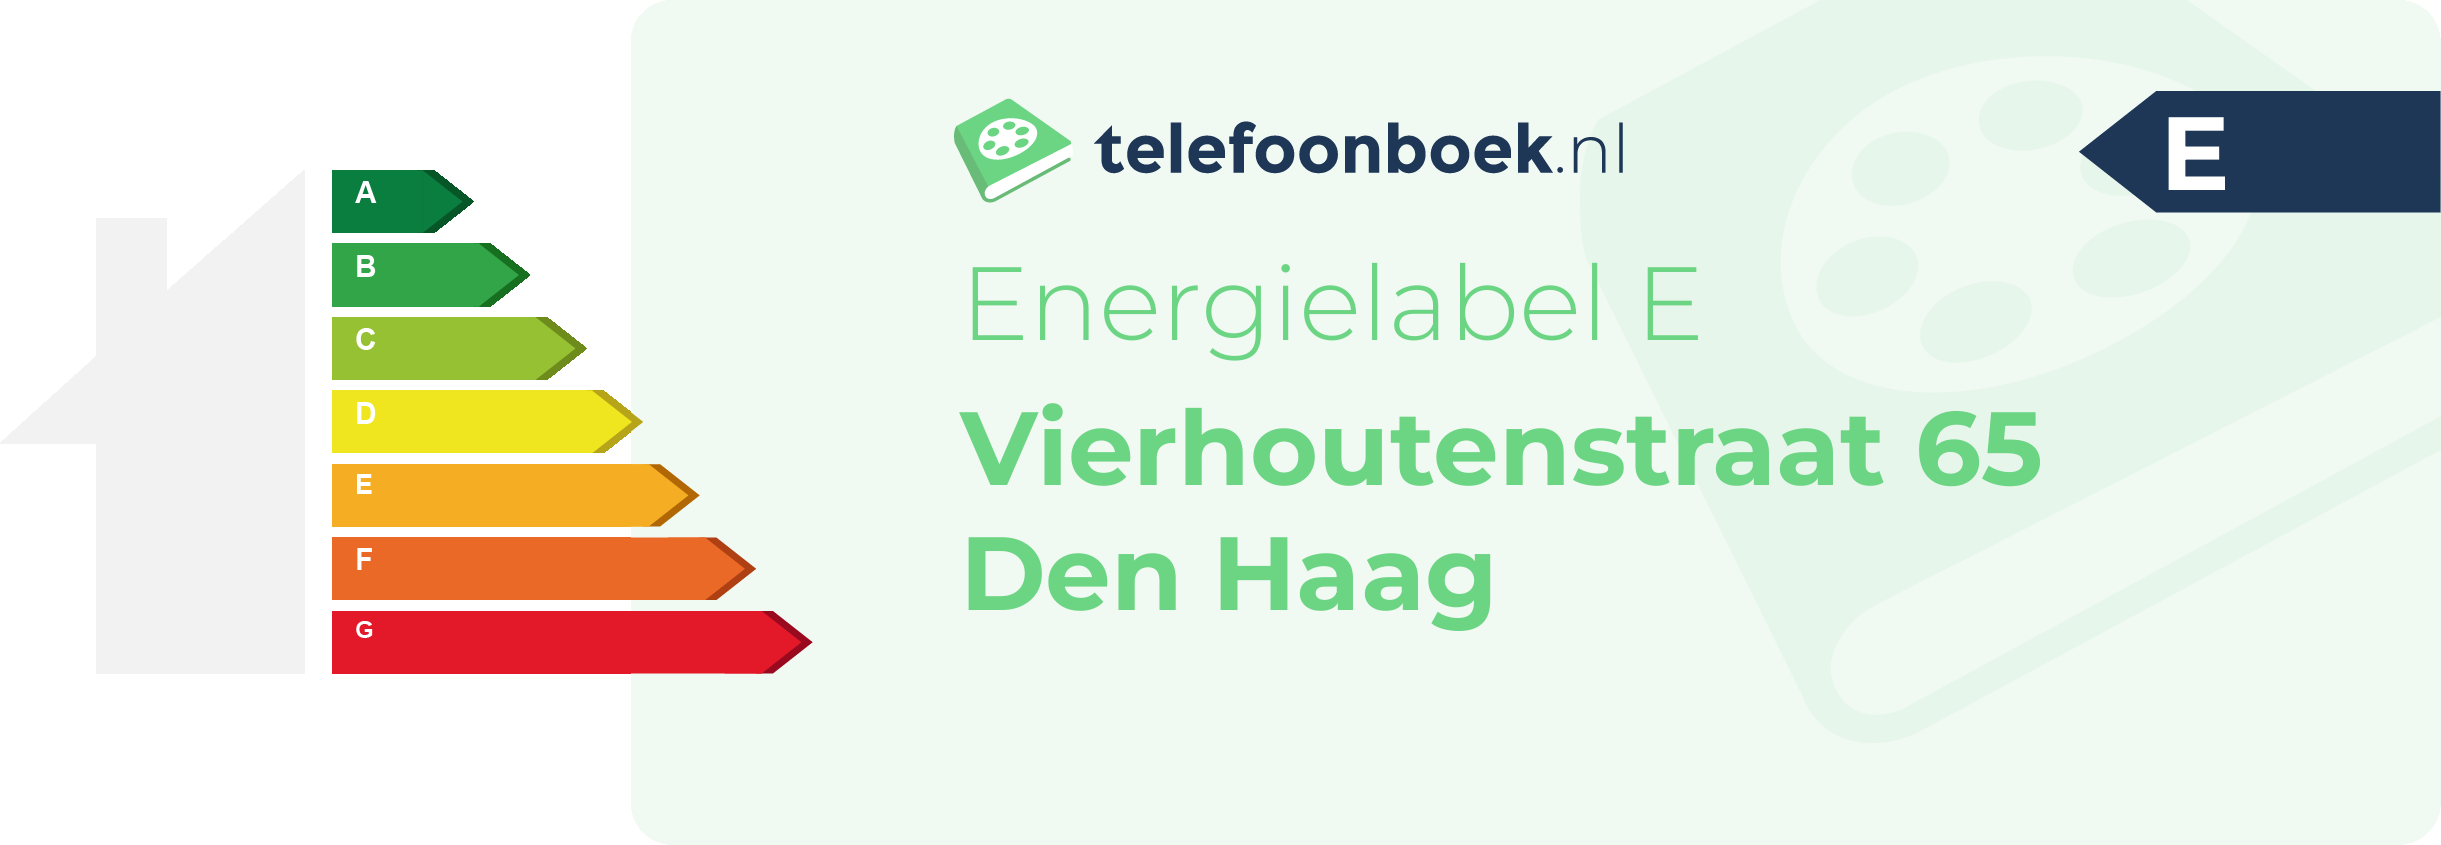 Energielabel Vierhoutenstraat 65 Den Haag